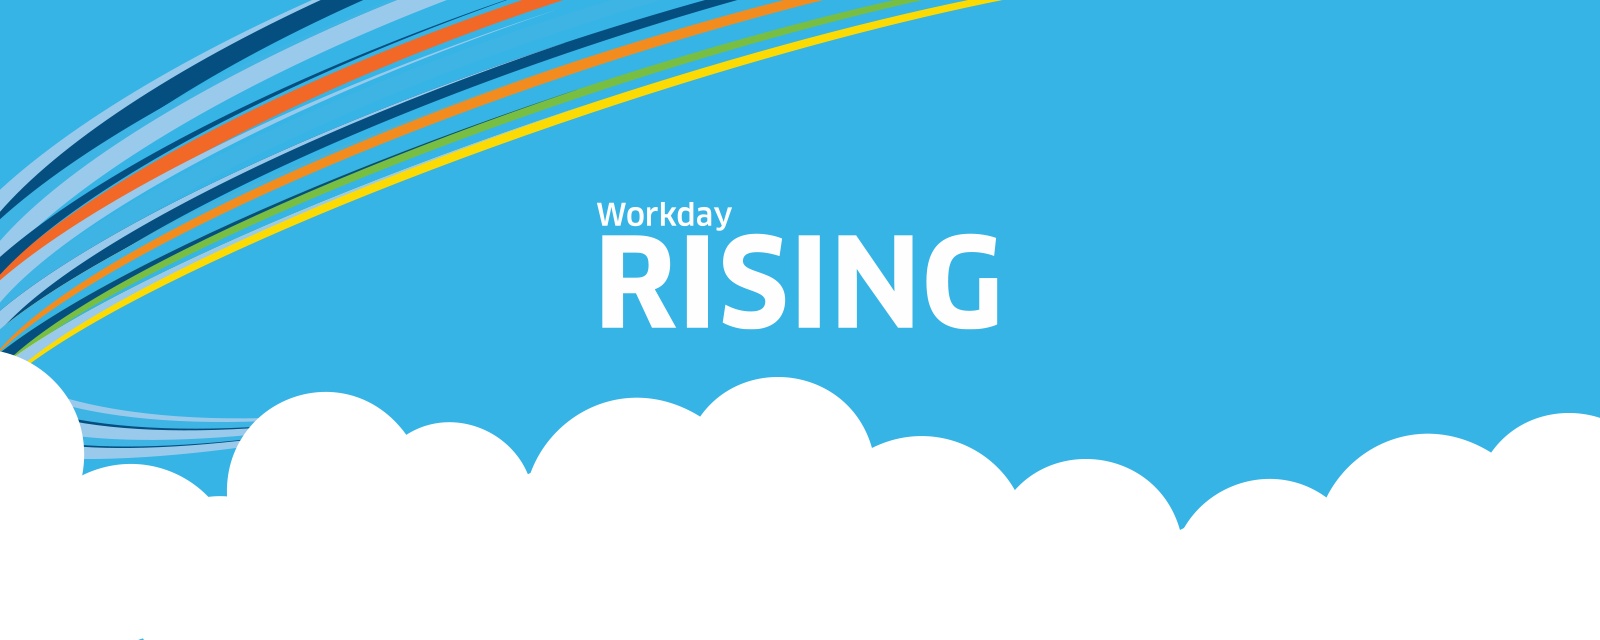 Workday Rising Daily to Workday Rising Workday US